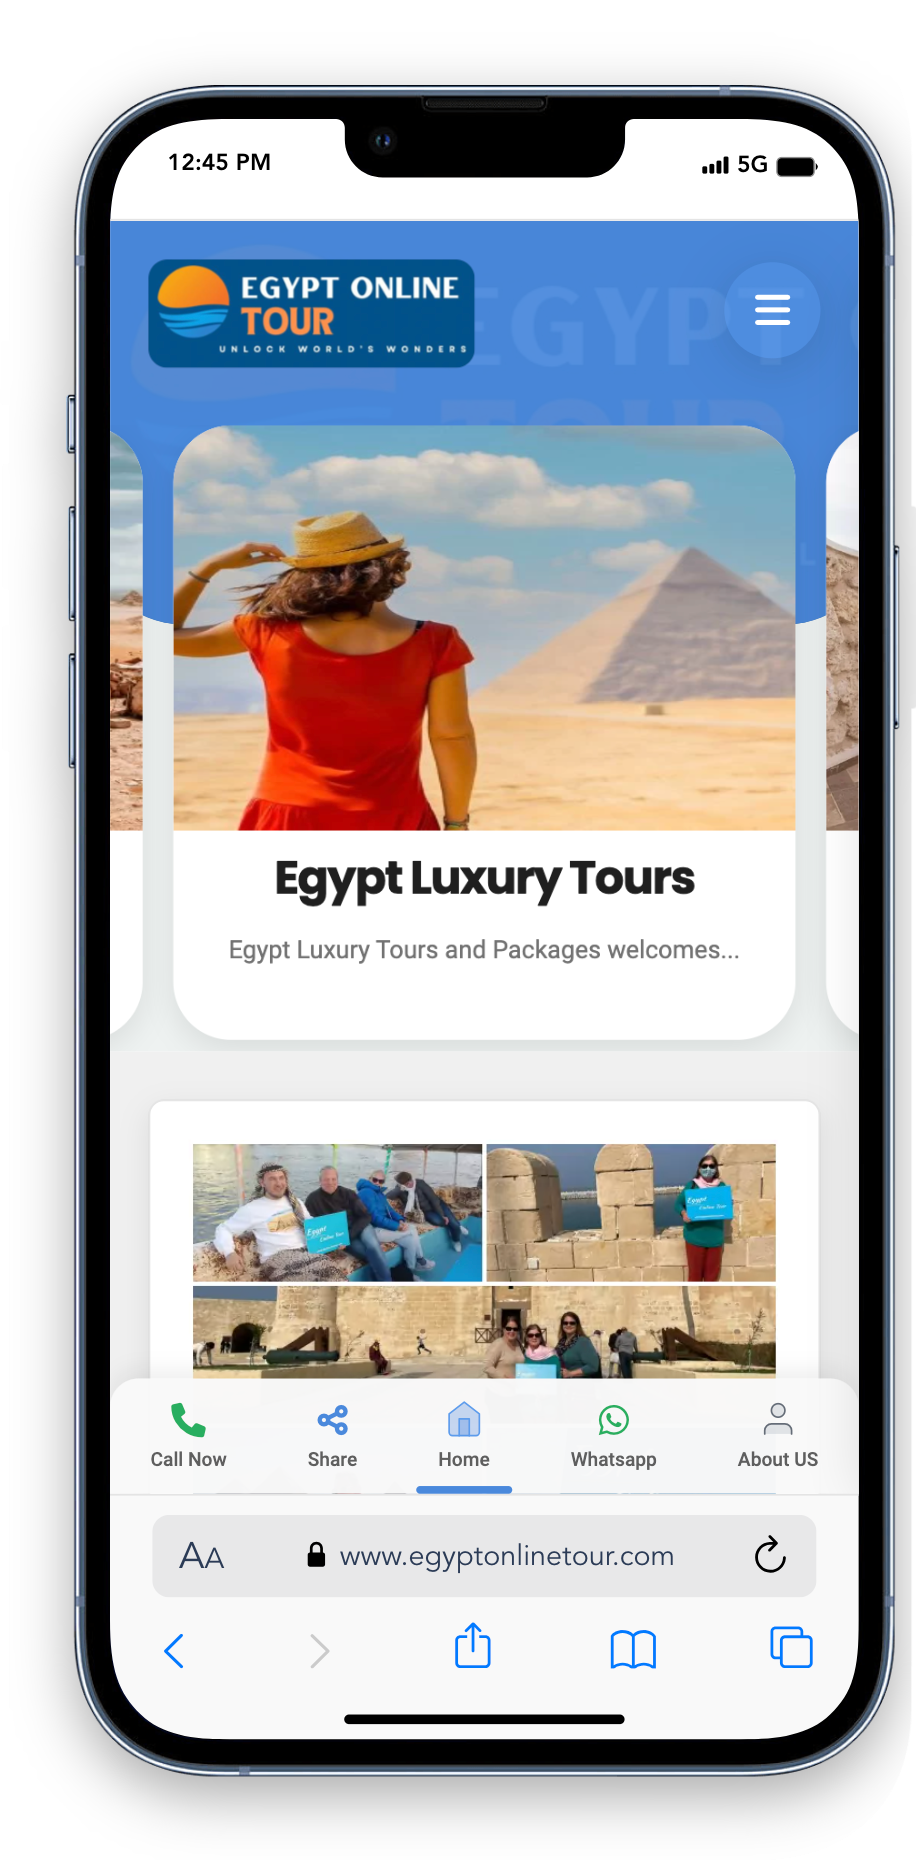 Egypt online tour